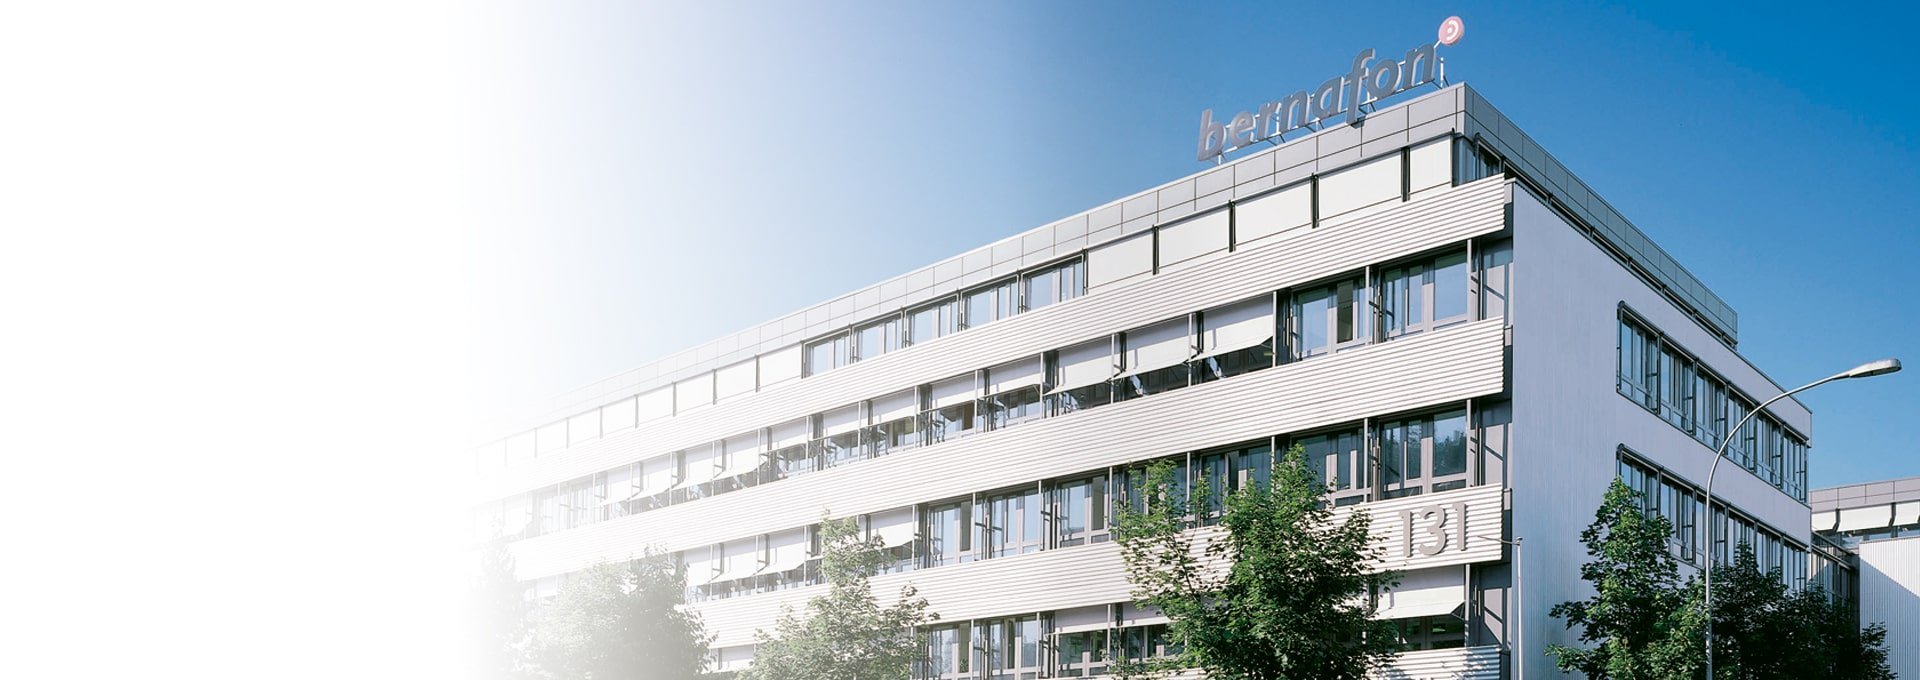 Фотография здания глобальной штаб-квартиры Bernafon в Берне, Швейцария, в солнечный день